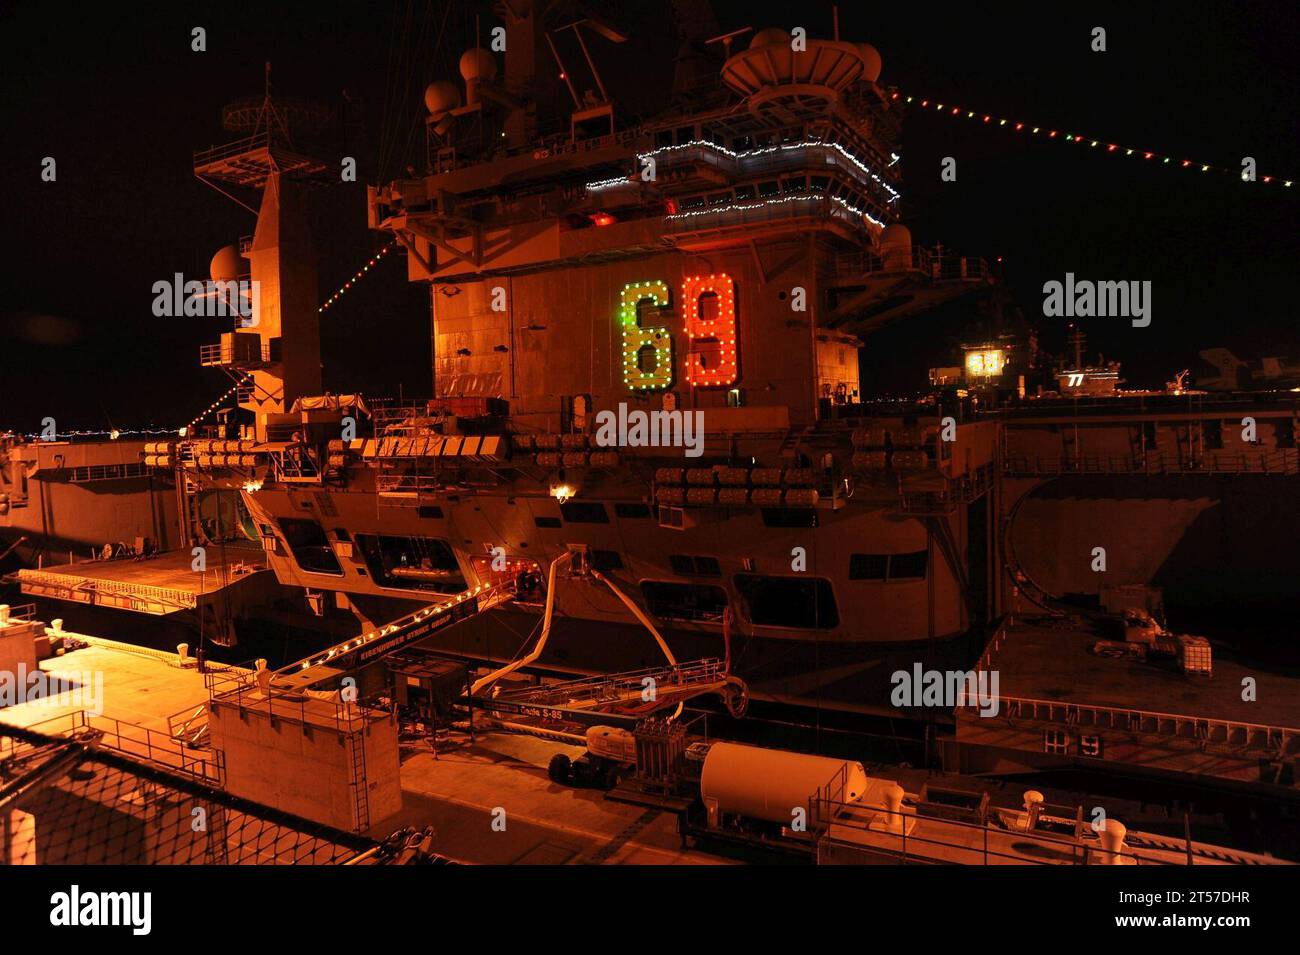 Die USS Dwight D. Eisenhower (CVN 69) der US Navy zeigt während der Operation Decorum, einer jährlichen Lichtshow, die von Na.jpg gesponsert wird, Weihnachtslichter Stockfoto